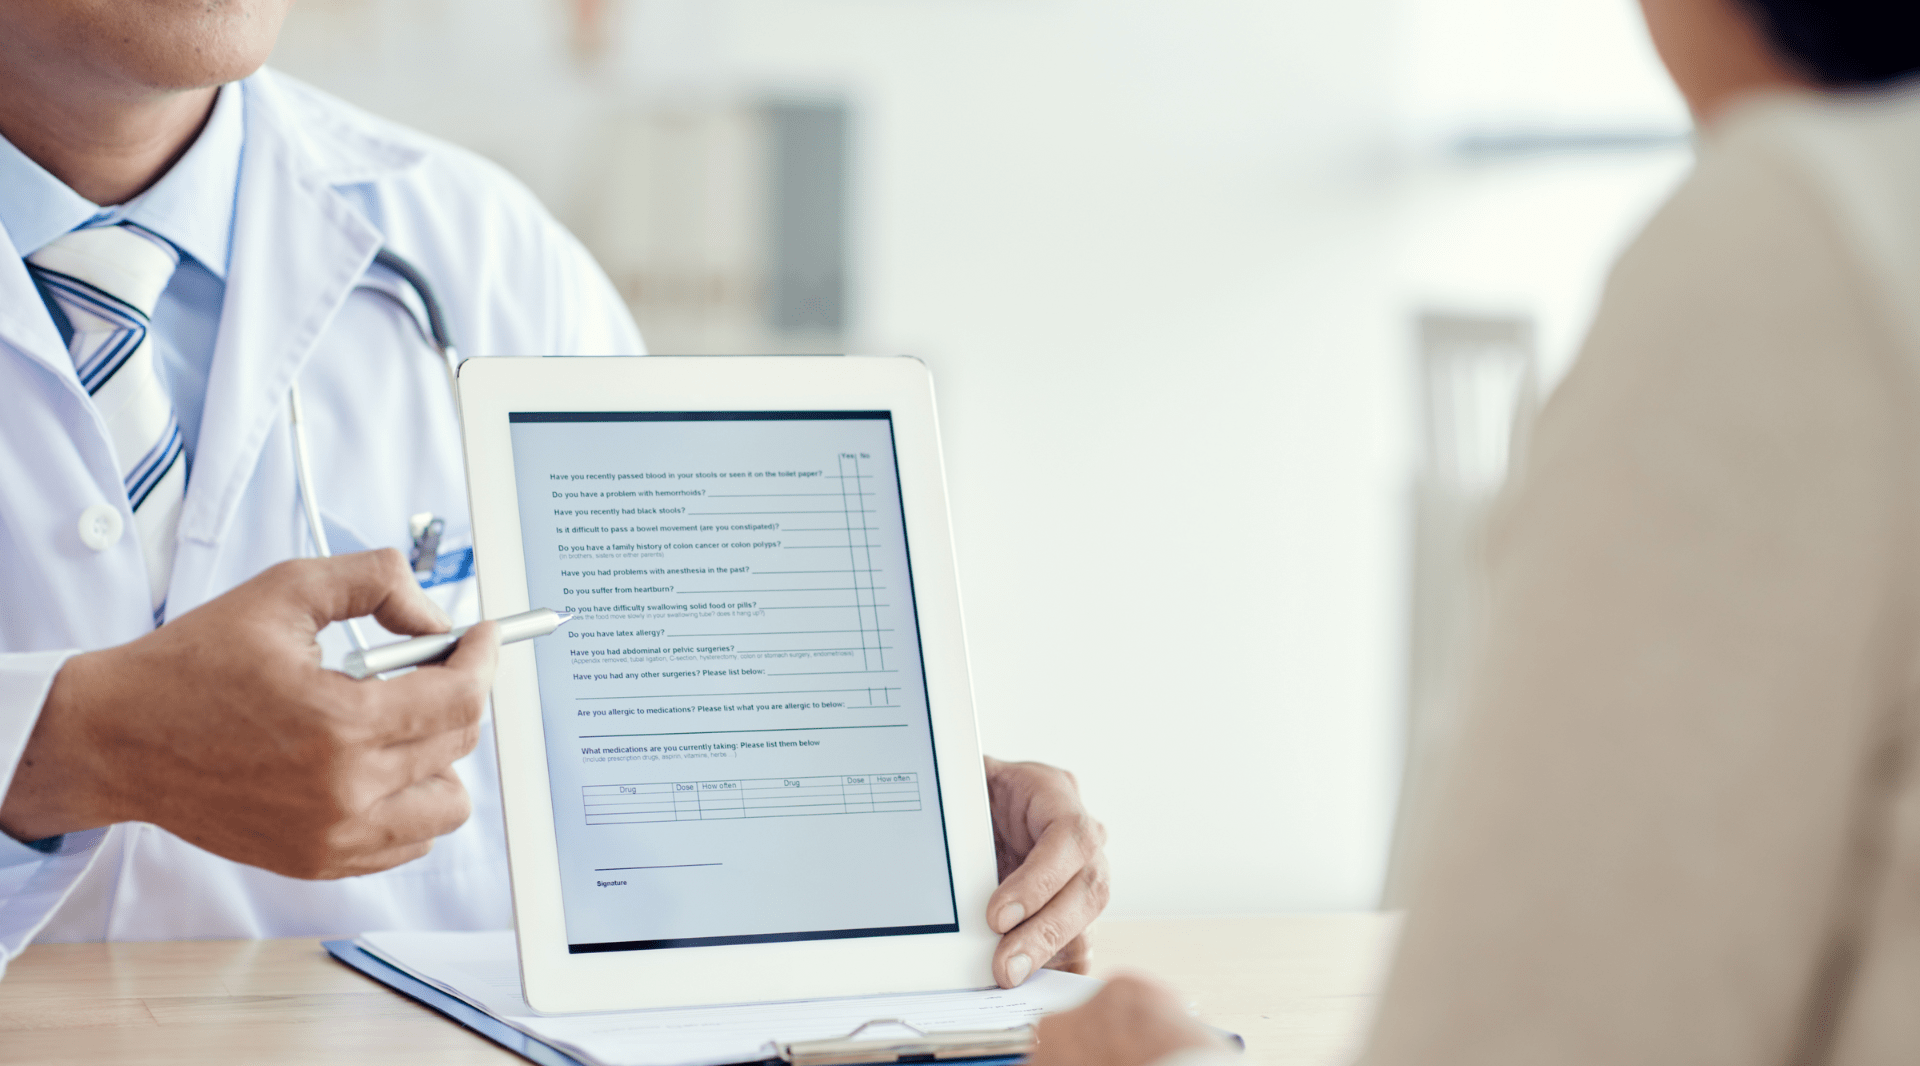 Prescrição médica digital é alternativa para reduzir erros no hospital